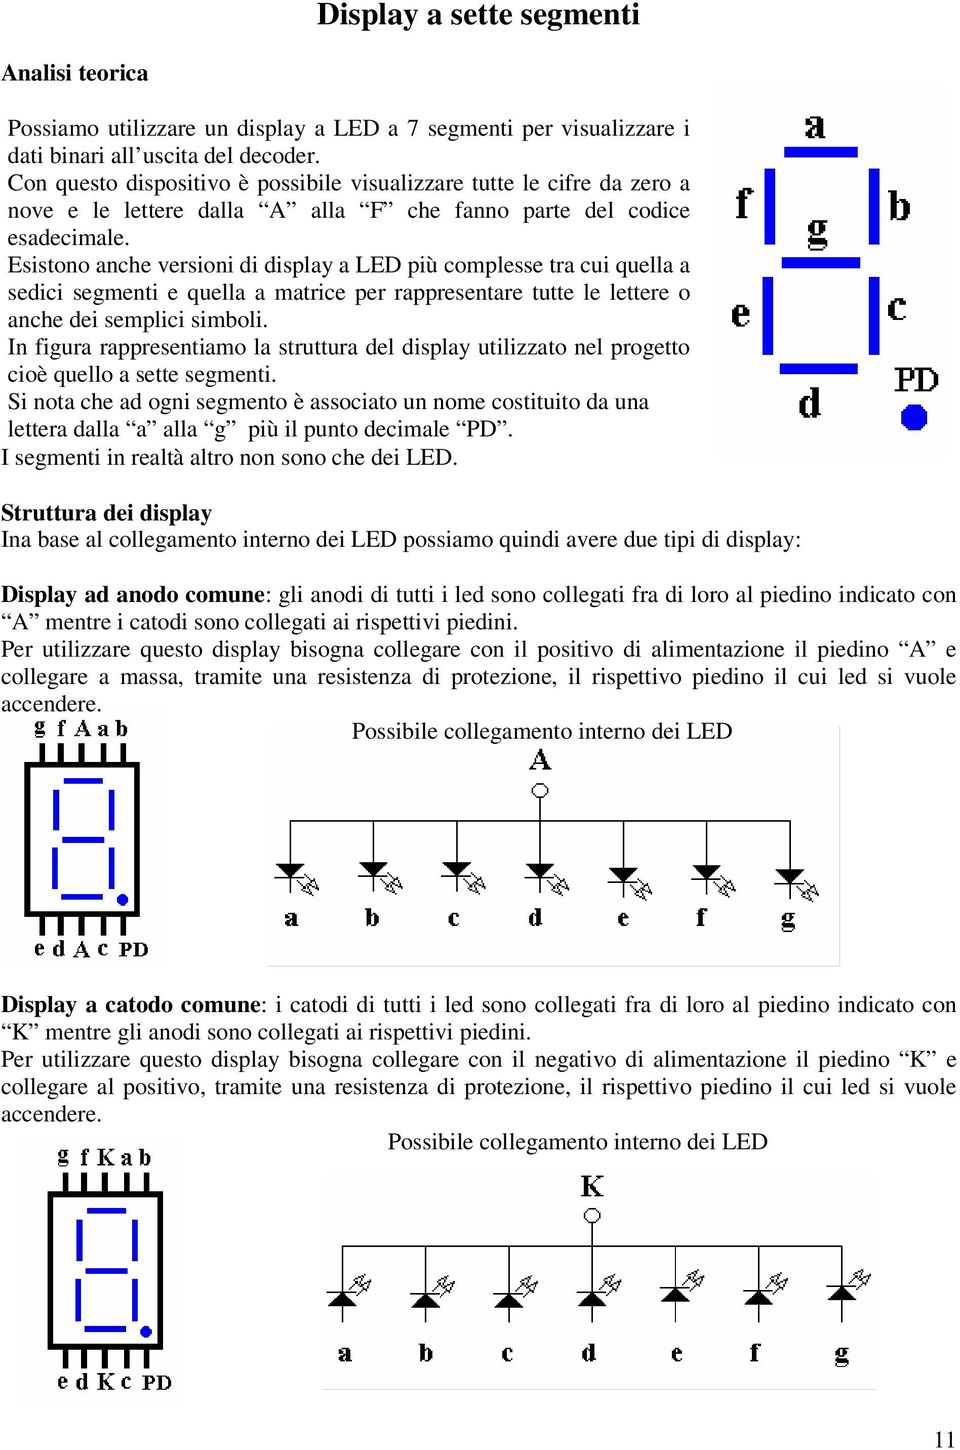 Esistono anche versioni di display a LED più complesse tra cui quella a sedici segmenti e quella a matrice per rappresentare tutte le lettere o anche dei semplici simboli.